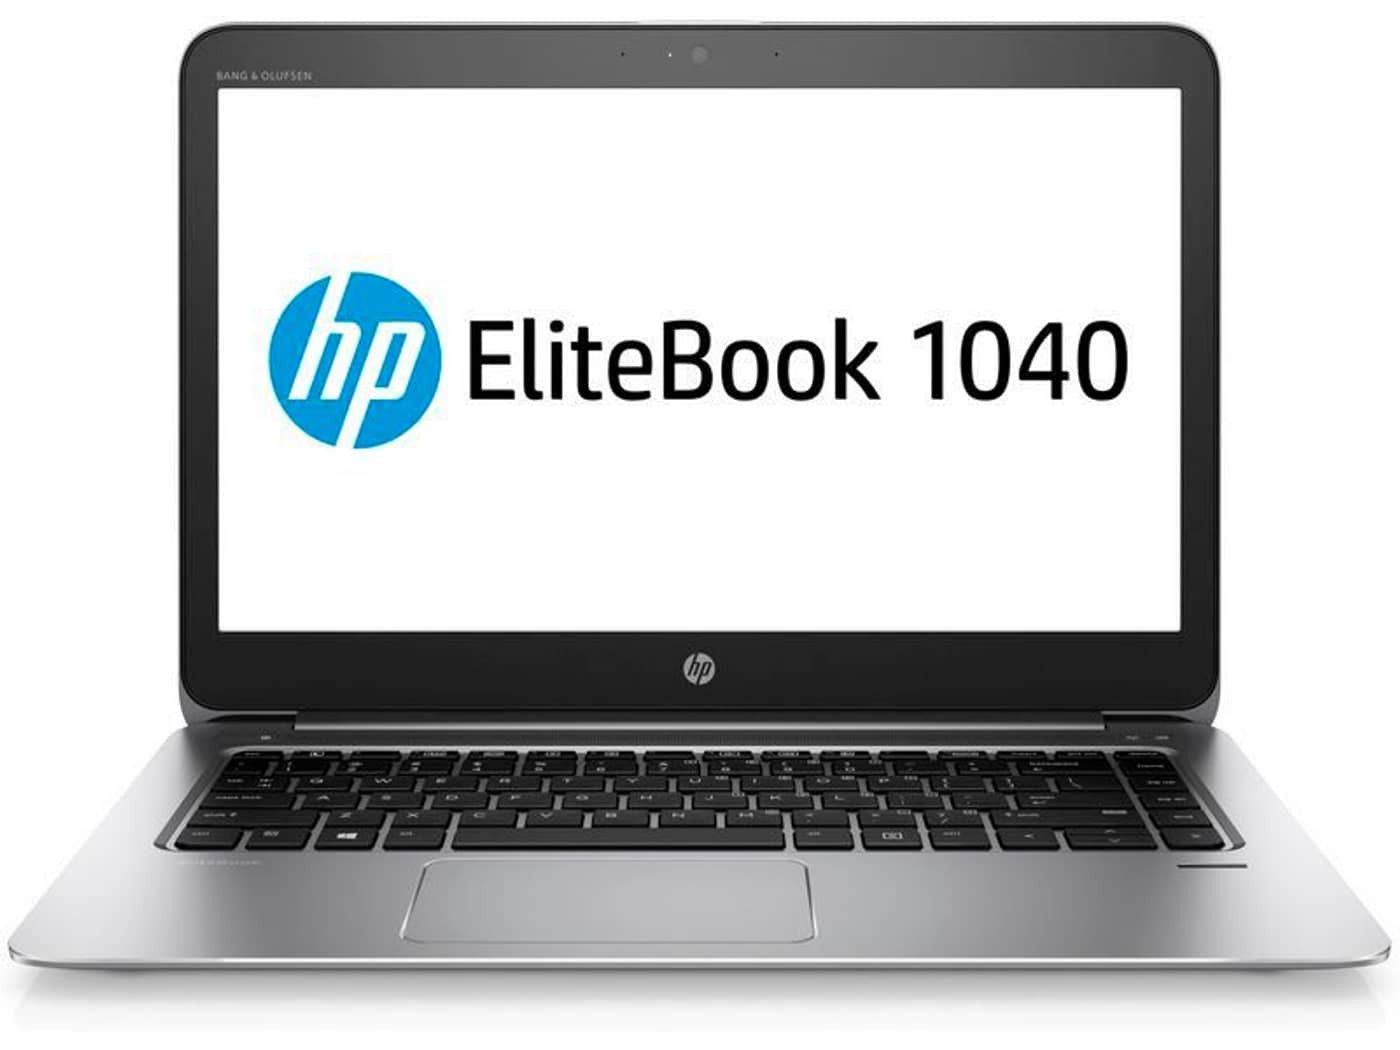 HP EliteBook 1040 G3 FullHD Intel i7-6600U 16GB RAM 512GB SSD Windows 10 Pro